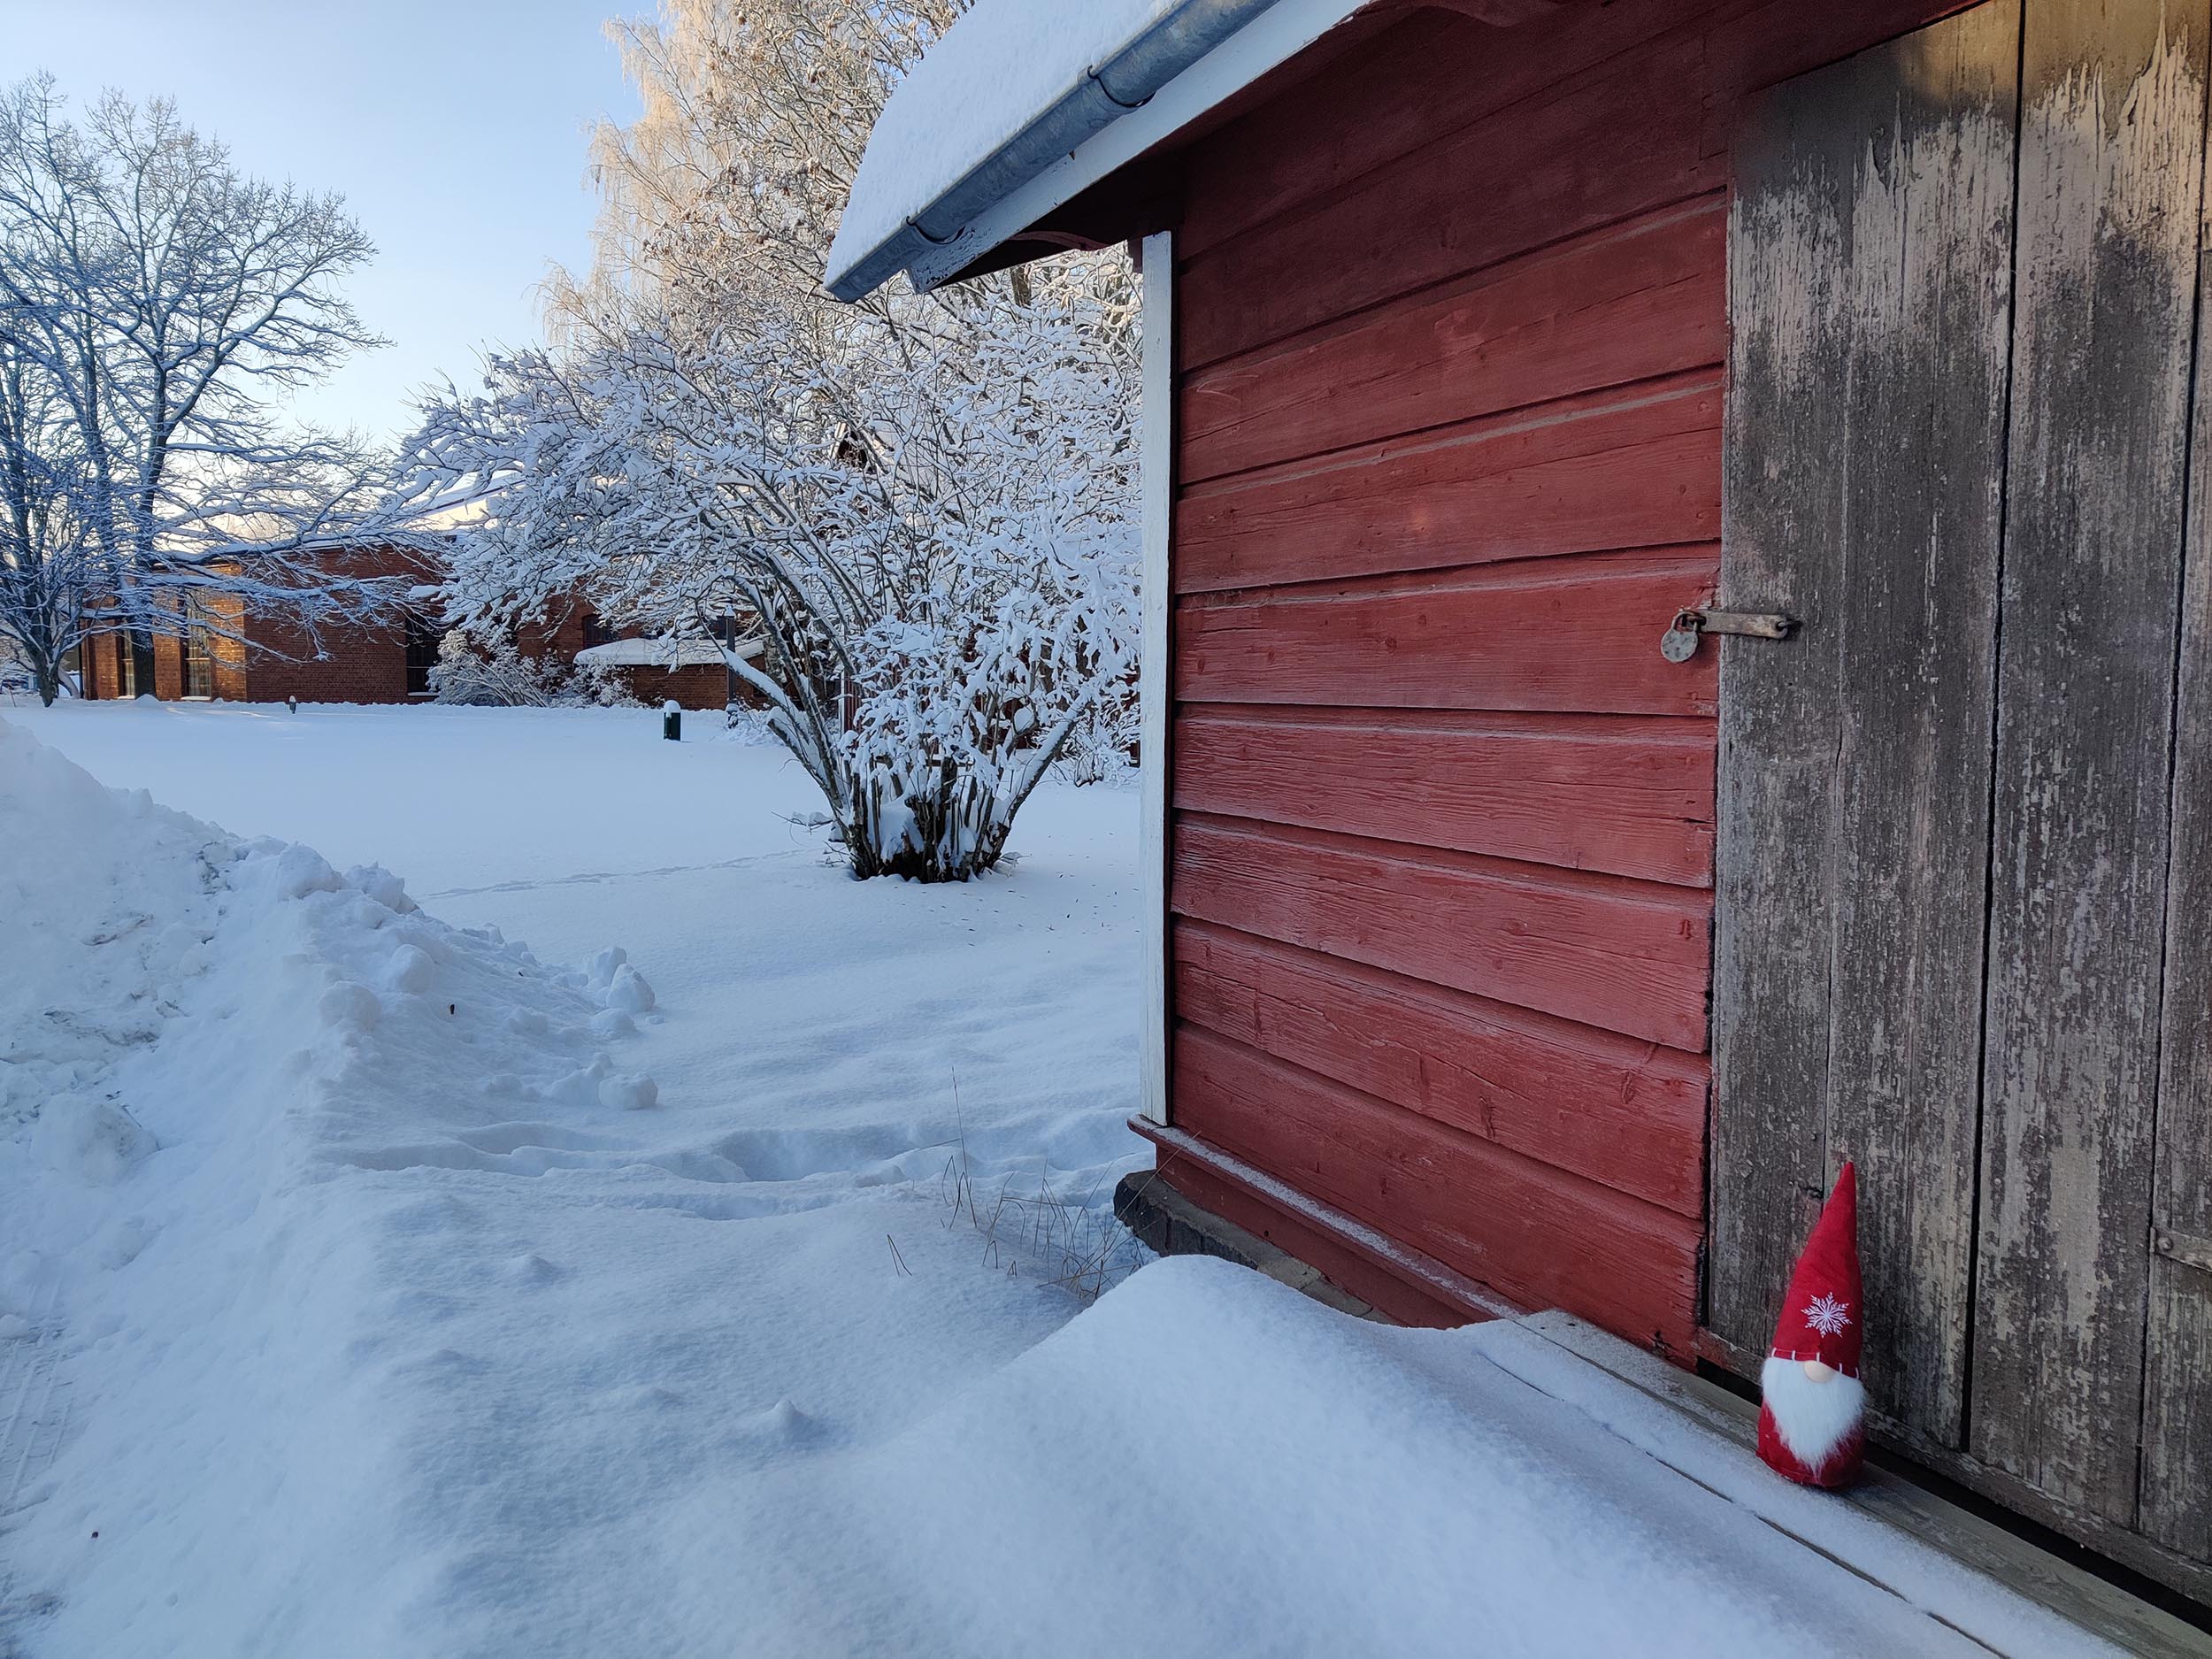 Punainen joulutonttu nököttää rautatierakennuksen edessä museon lumisessa puistossa.